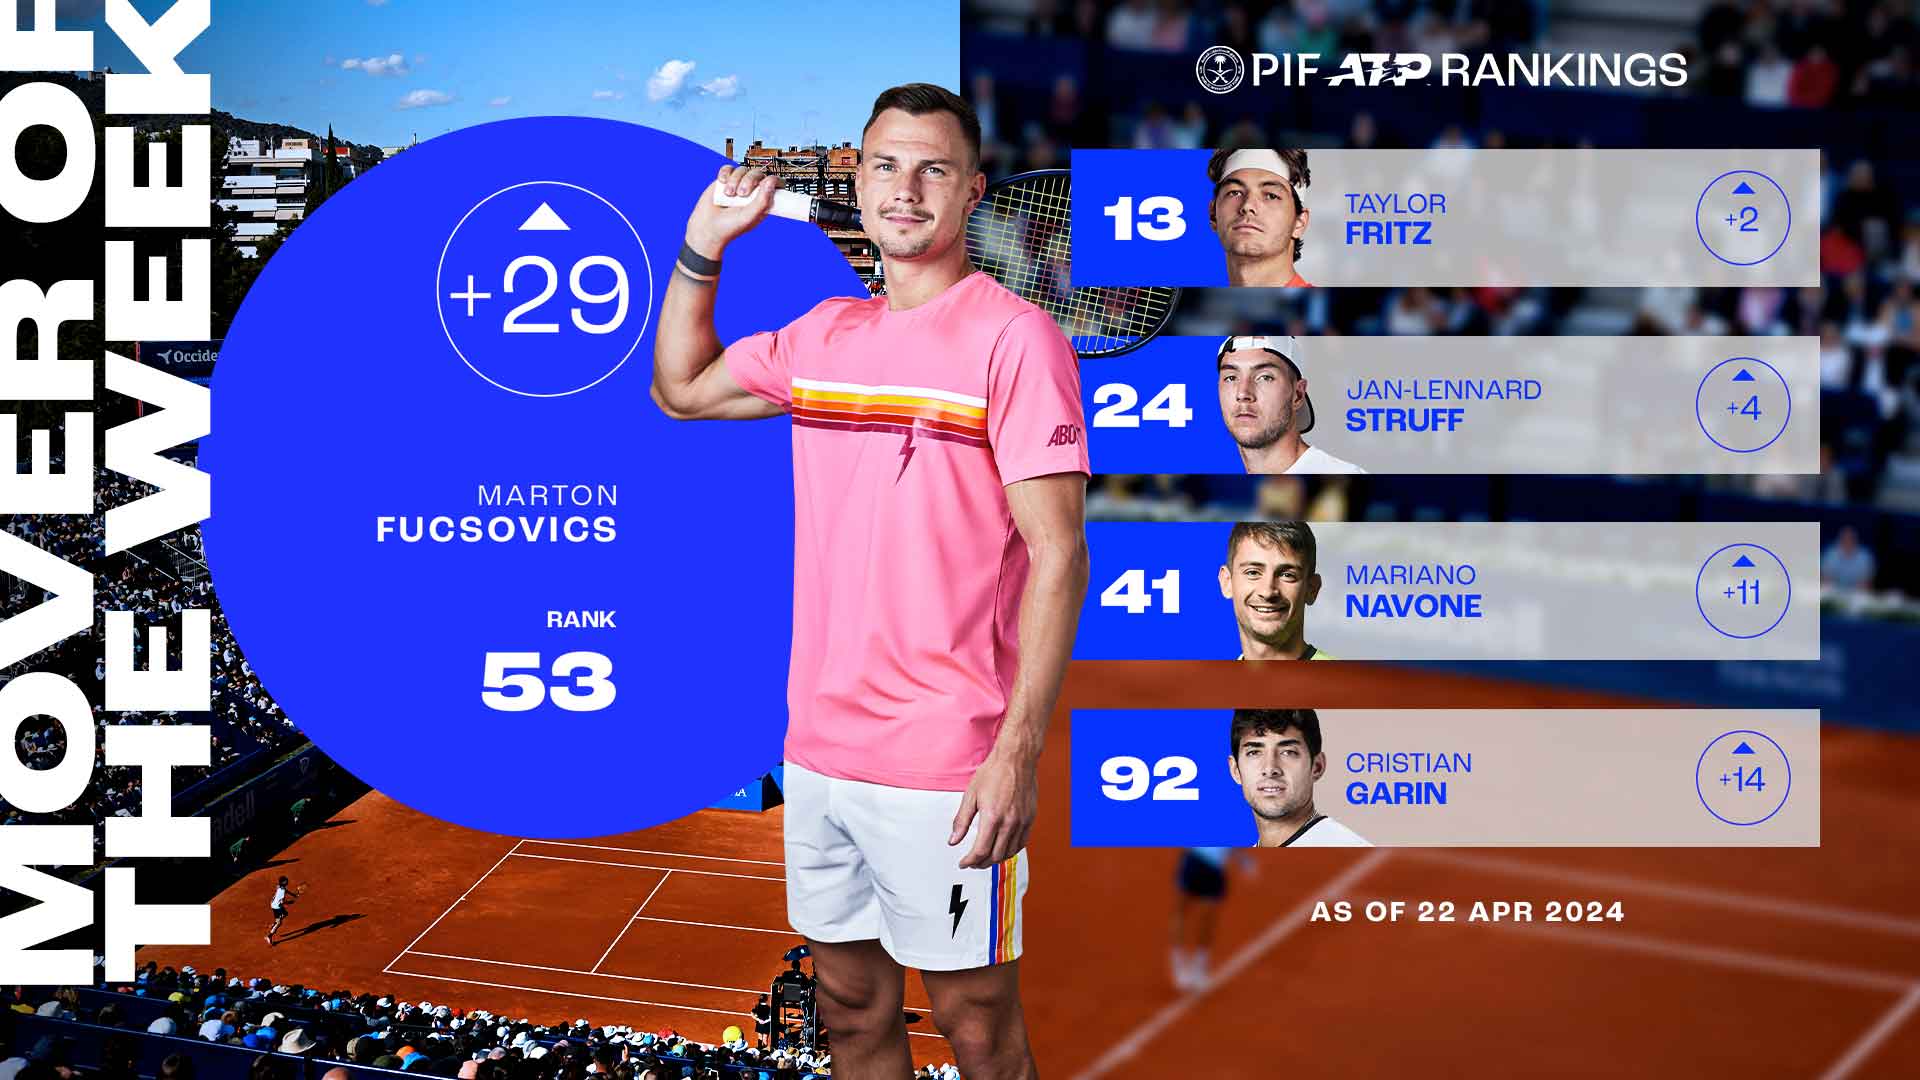 Marton Fucsovics has climbed 29 spots in the PIF ATP Rankings.